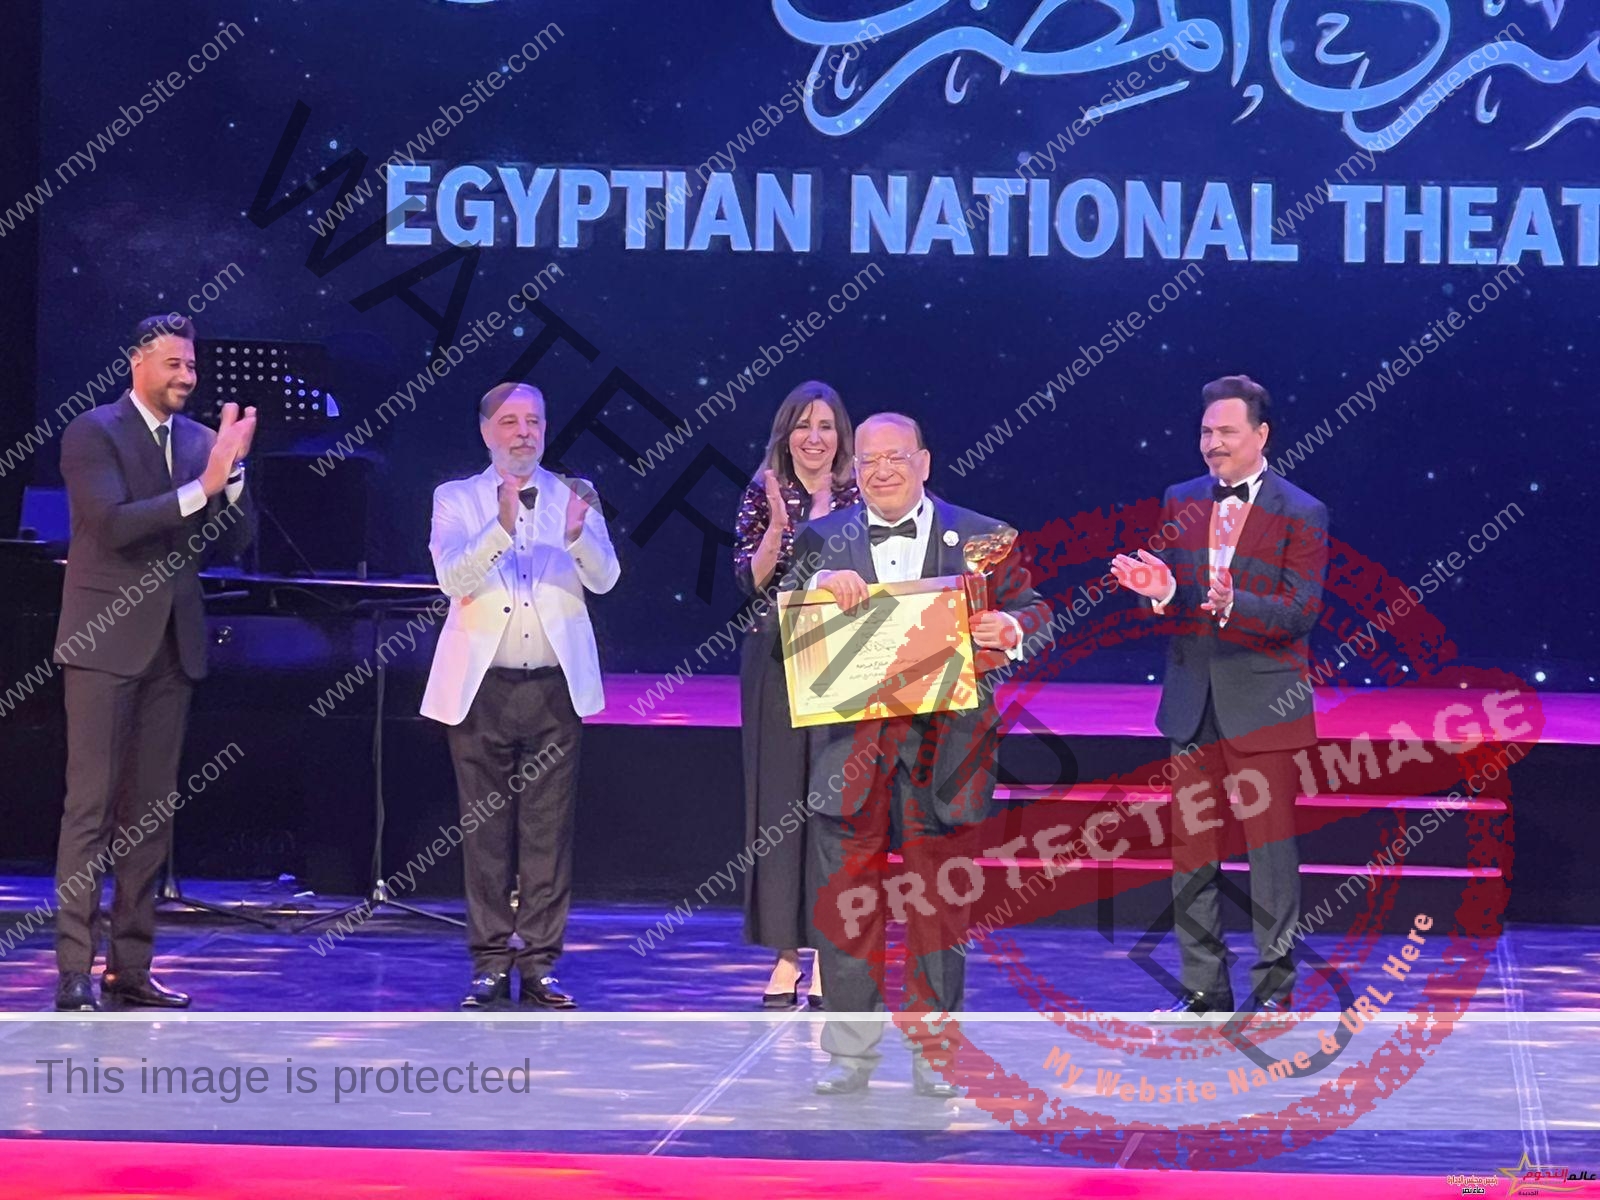 تكريم الفنان الكبير صلاح عبد الله في المهرجان القومي للمسرح المصري خلال دورته 16